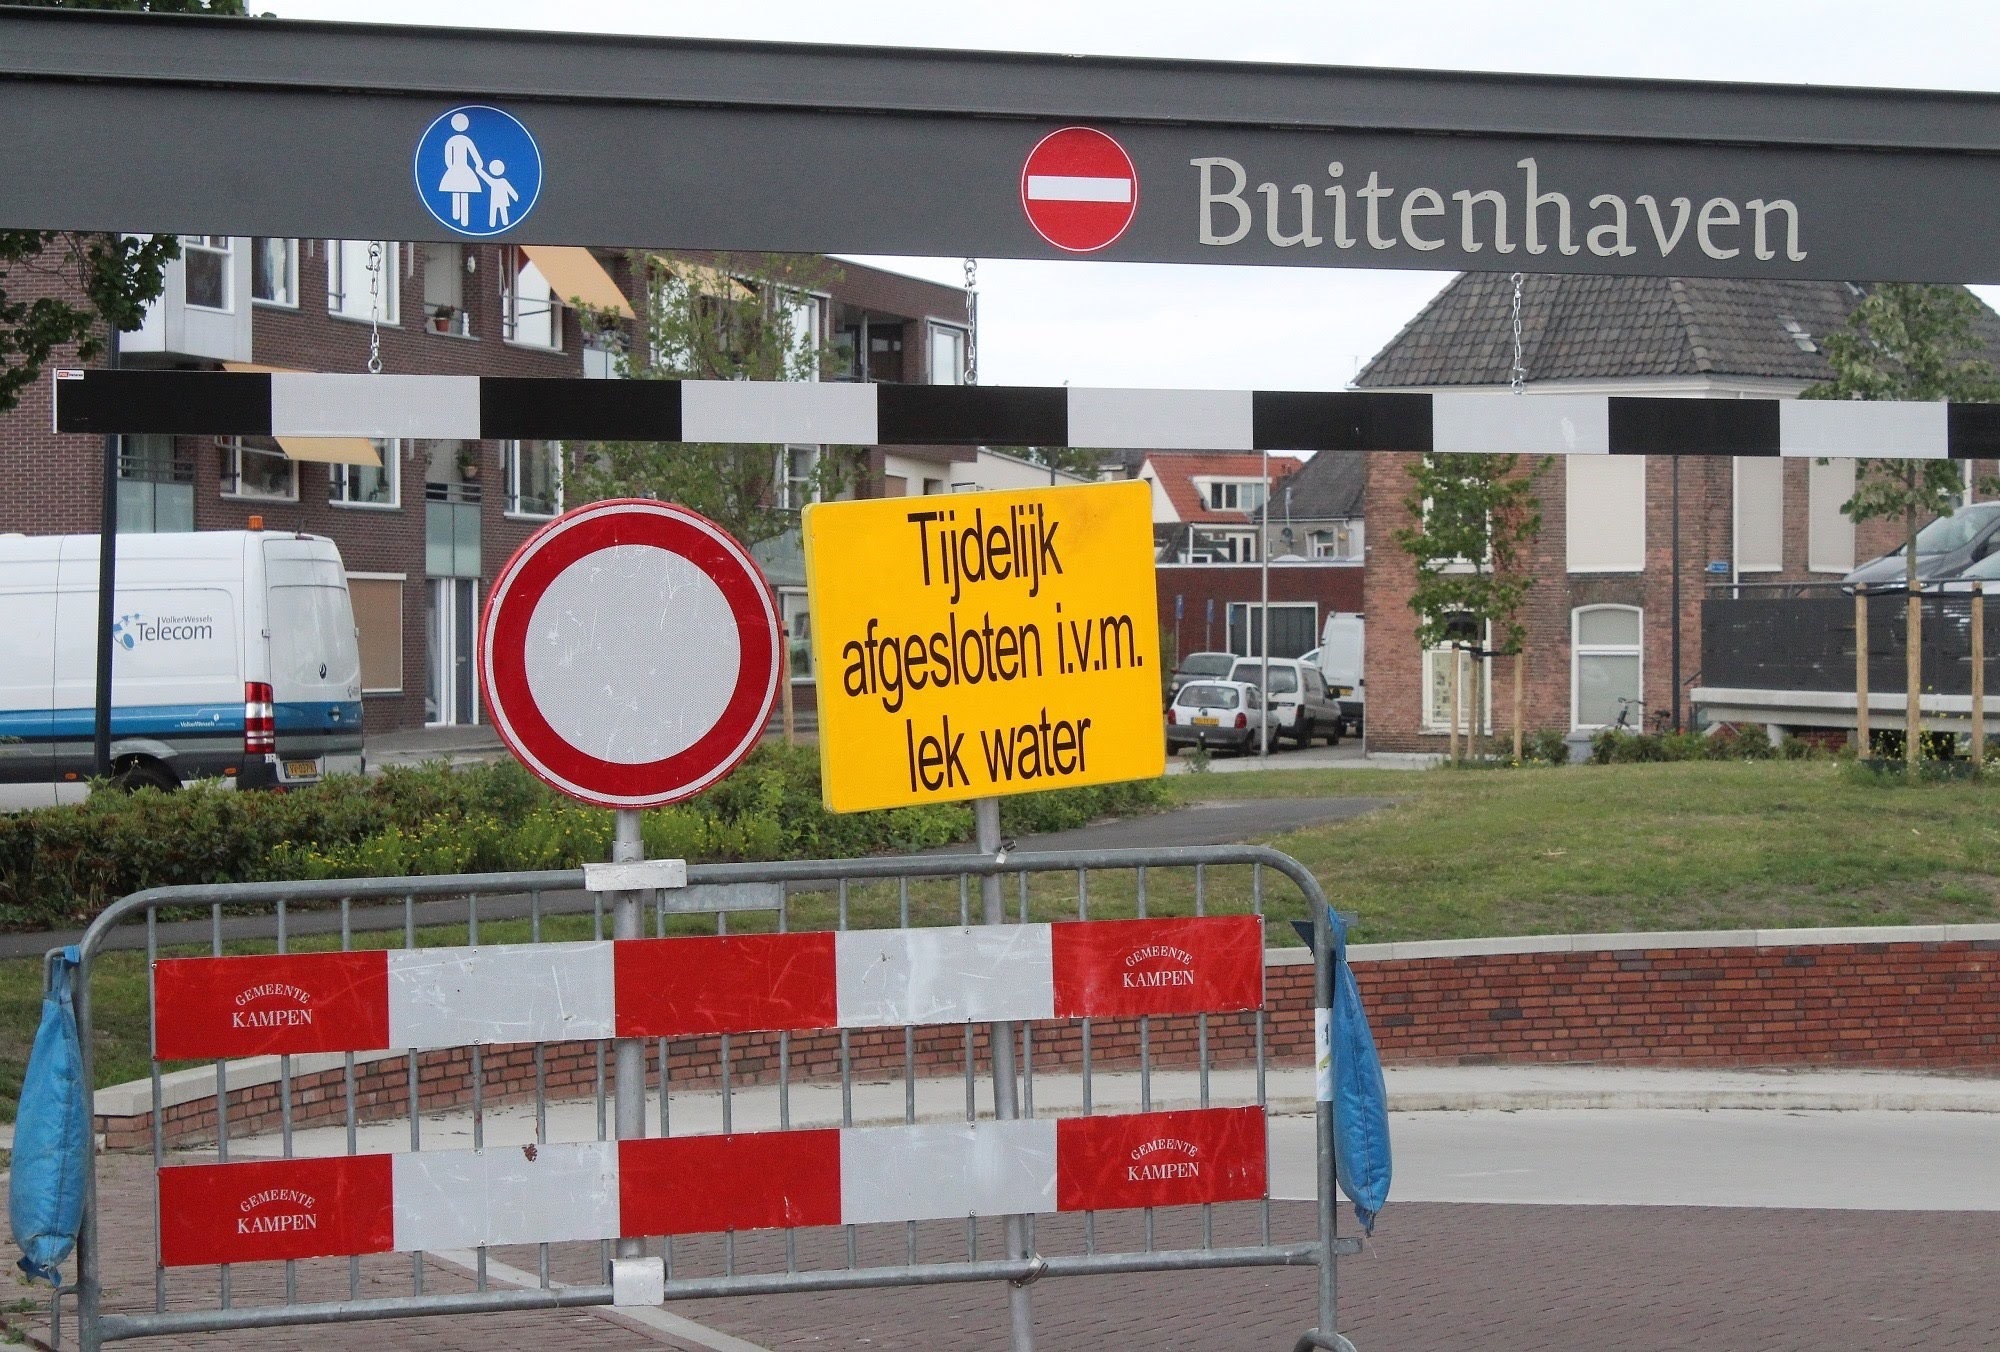 Evaluatie parkeergarage Buitenhaven brengt waardevolle lessen voor de toekomst